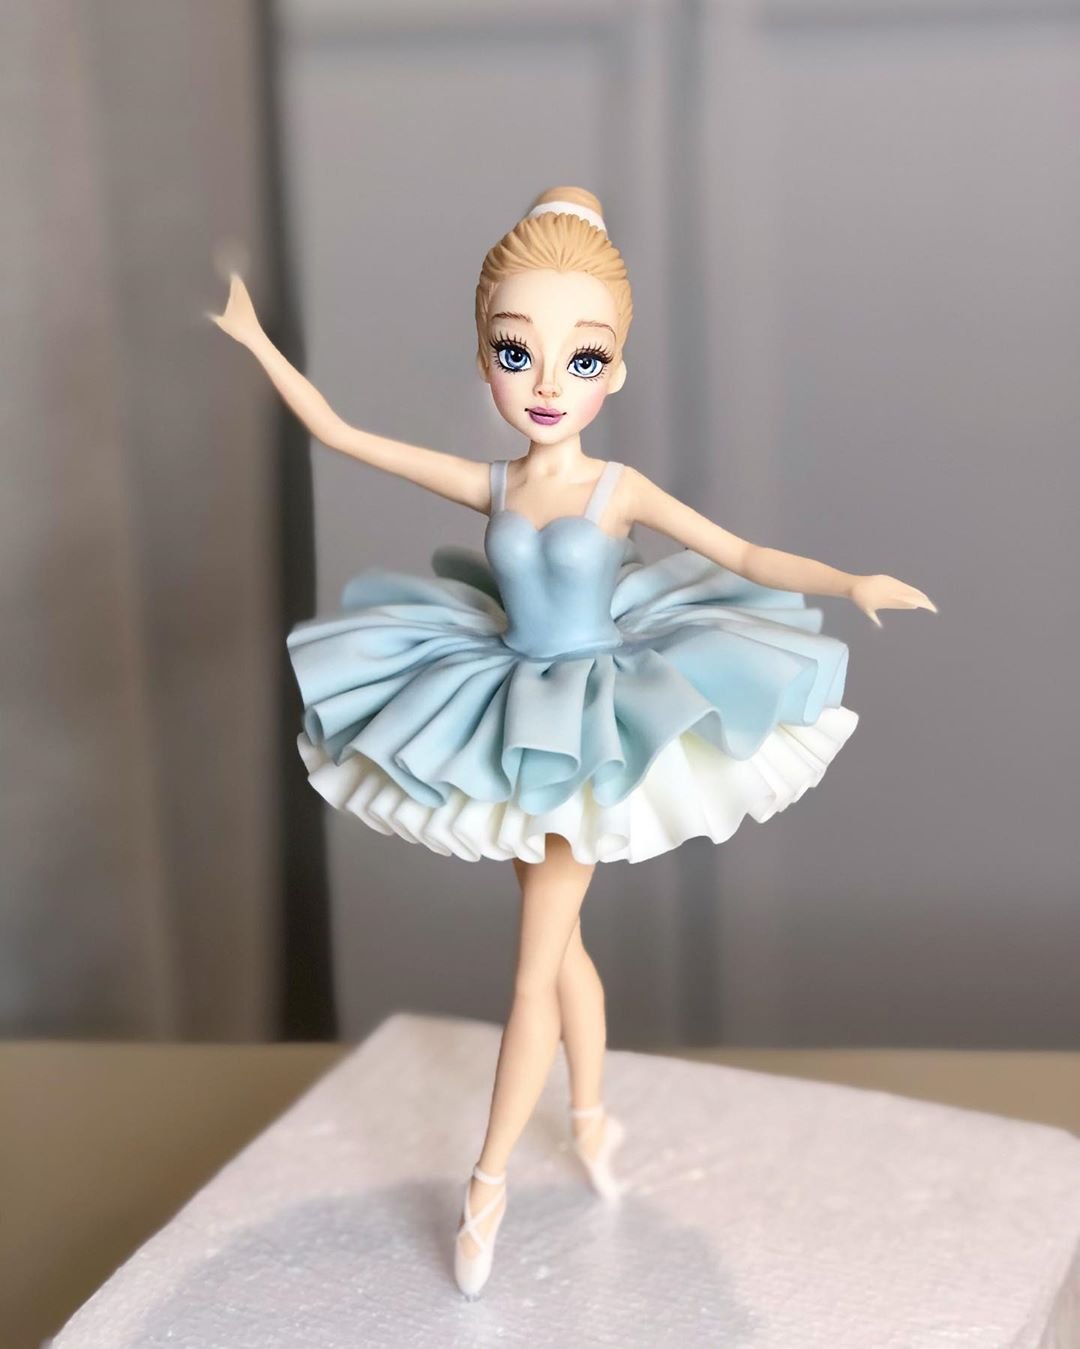 Mais uma amostra de atenção aos detalhes: até os franzidos do tutu da bailarina são super bem feitos! (Fonte: Instagram/Reprodução)